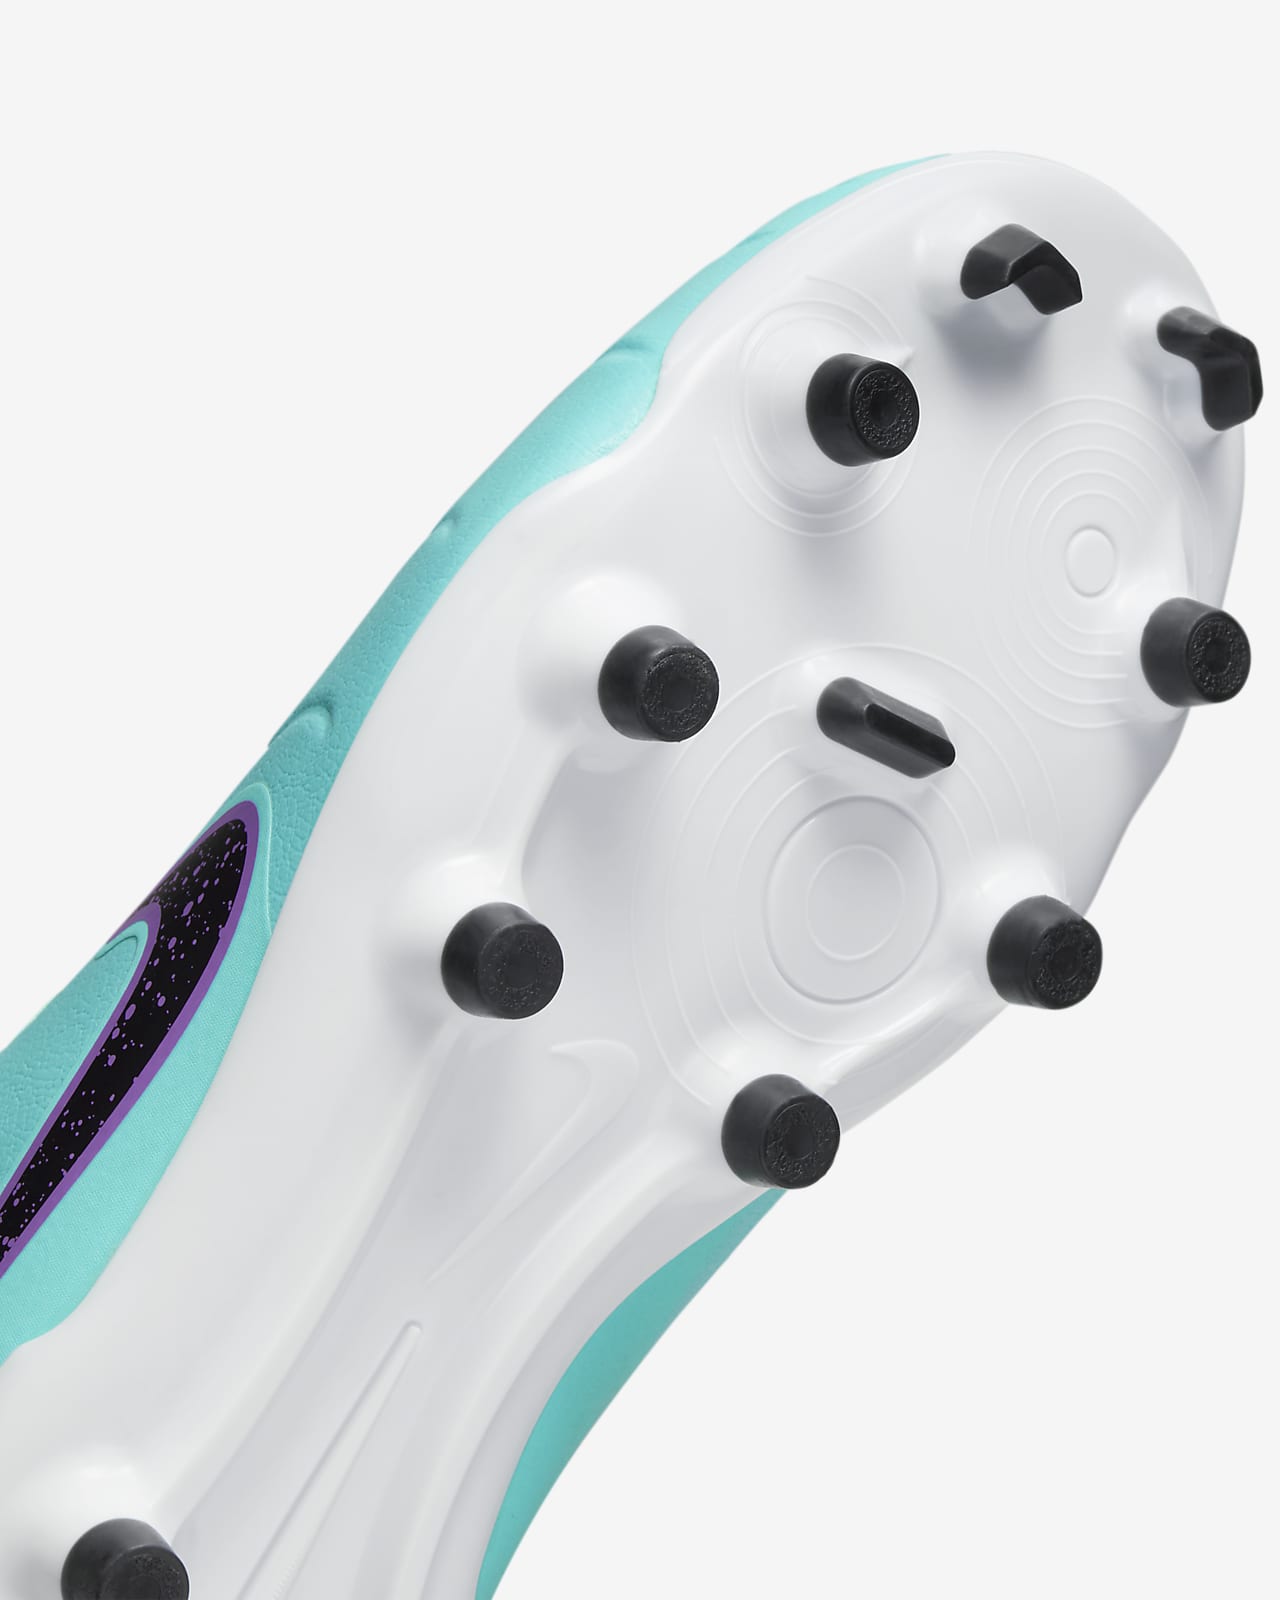 Chaussure de foot basse à crampons multi-surfaces Nike Jr. Tiempo